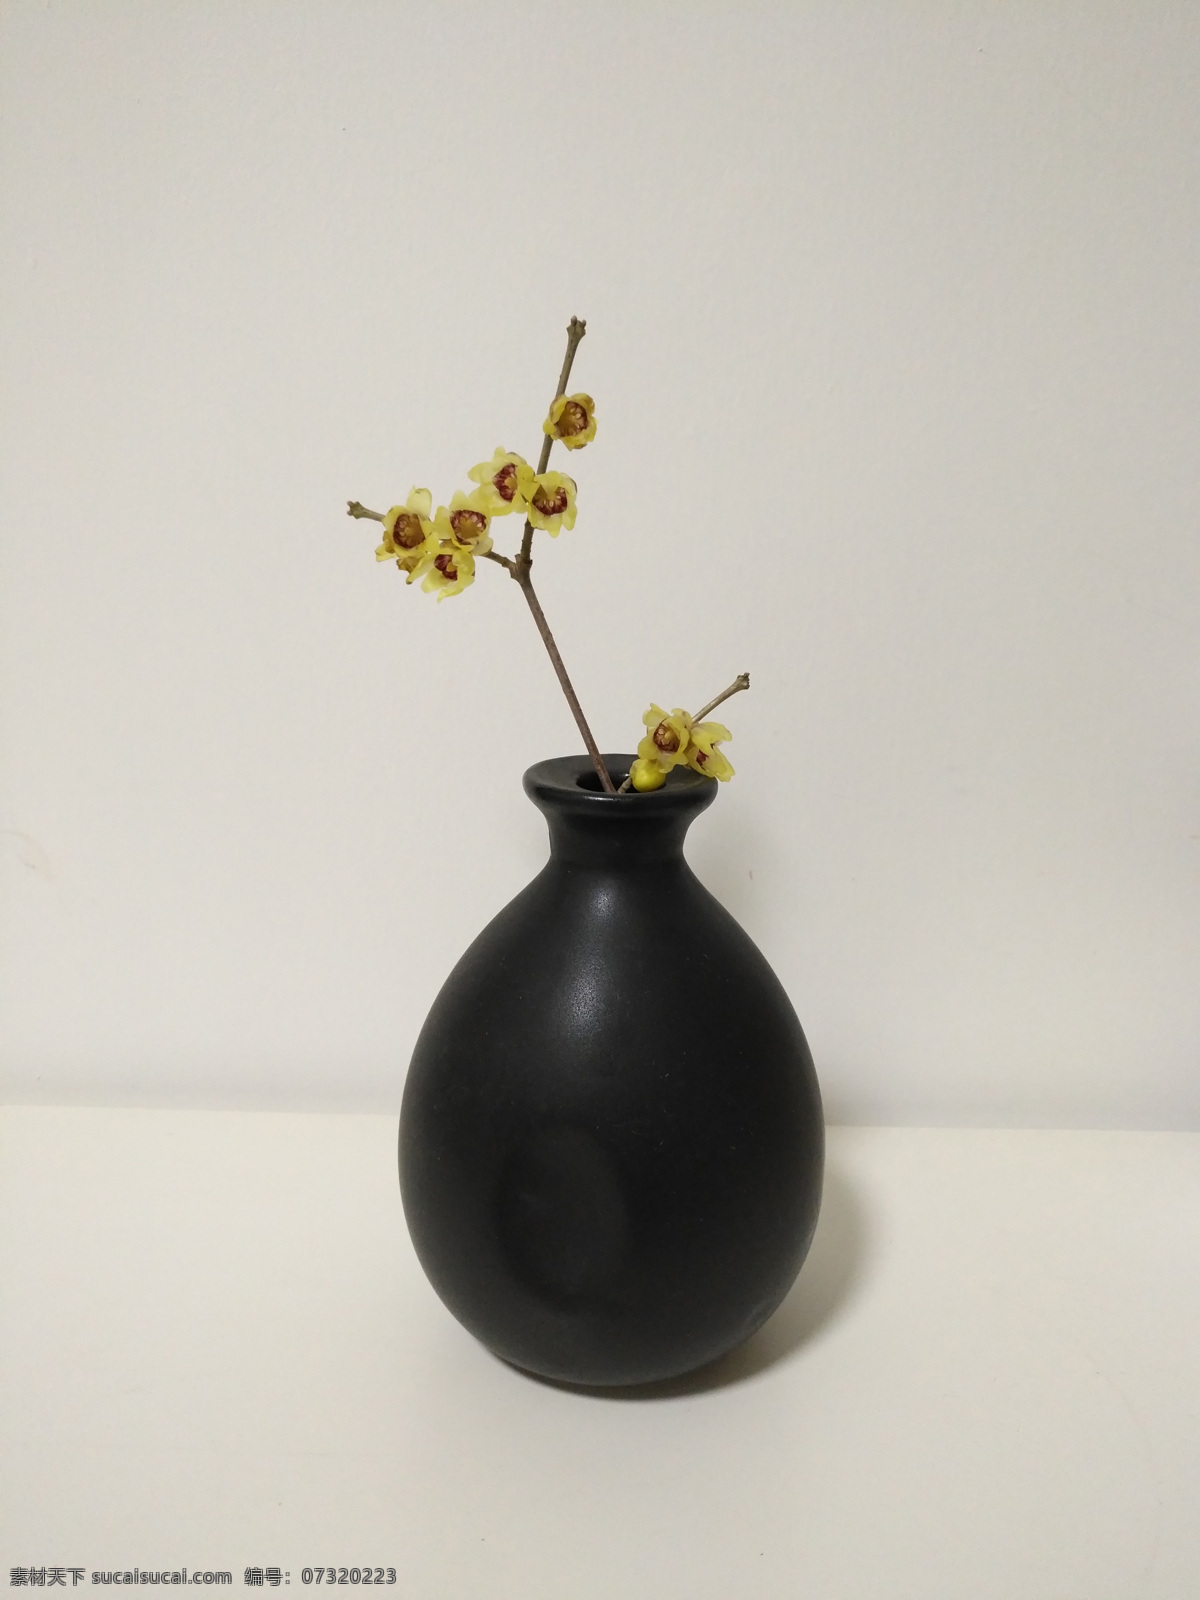 中式 插花艺术 腊梅 陶瓷 花瓶 暗香 黑色陶瓷花瓶 禅意 植物 生活百科 娱乐休闲